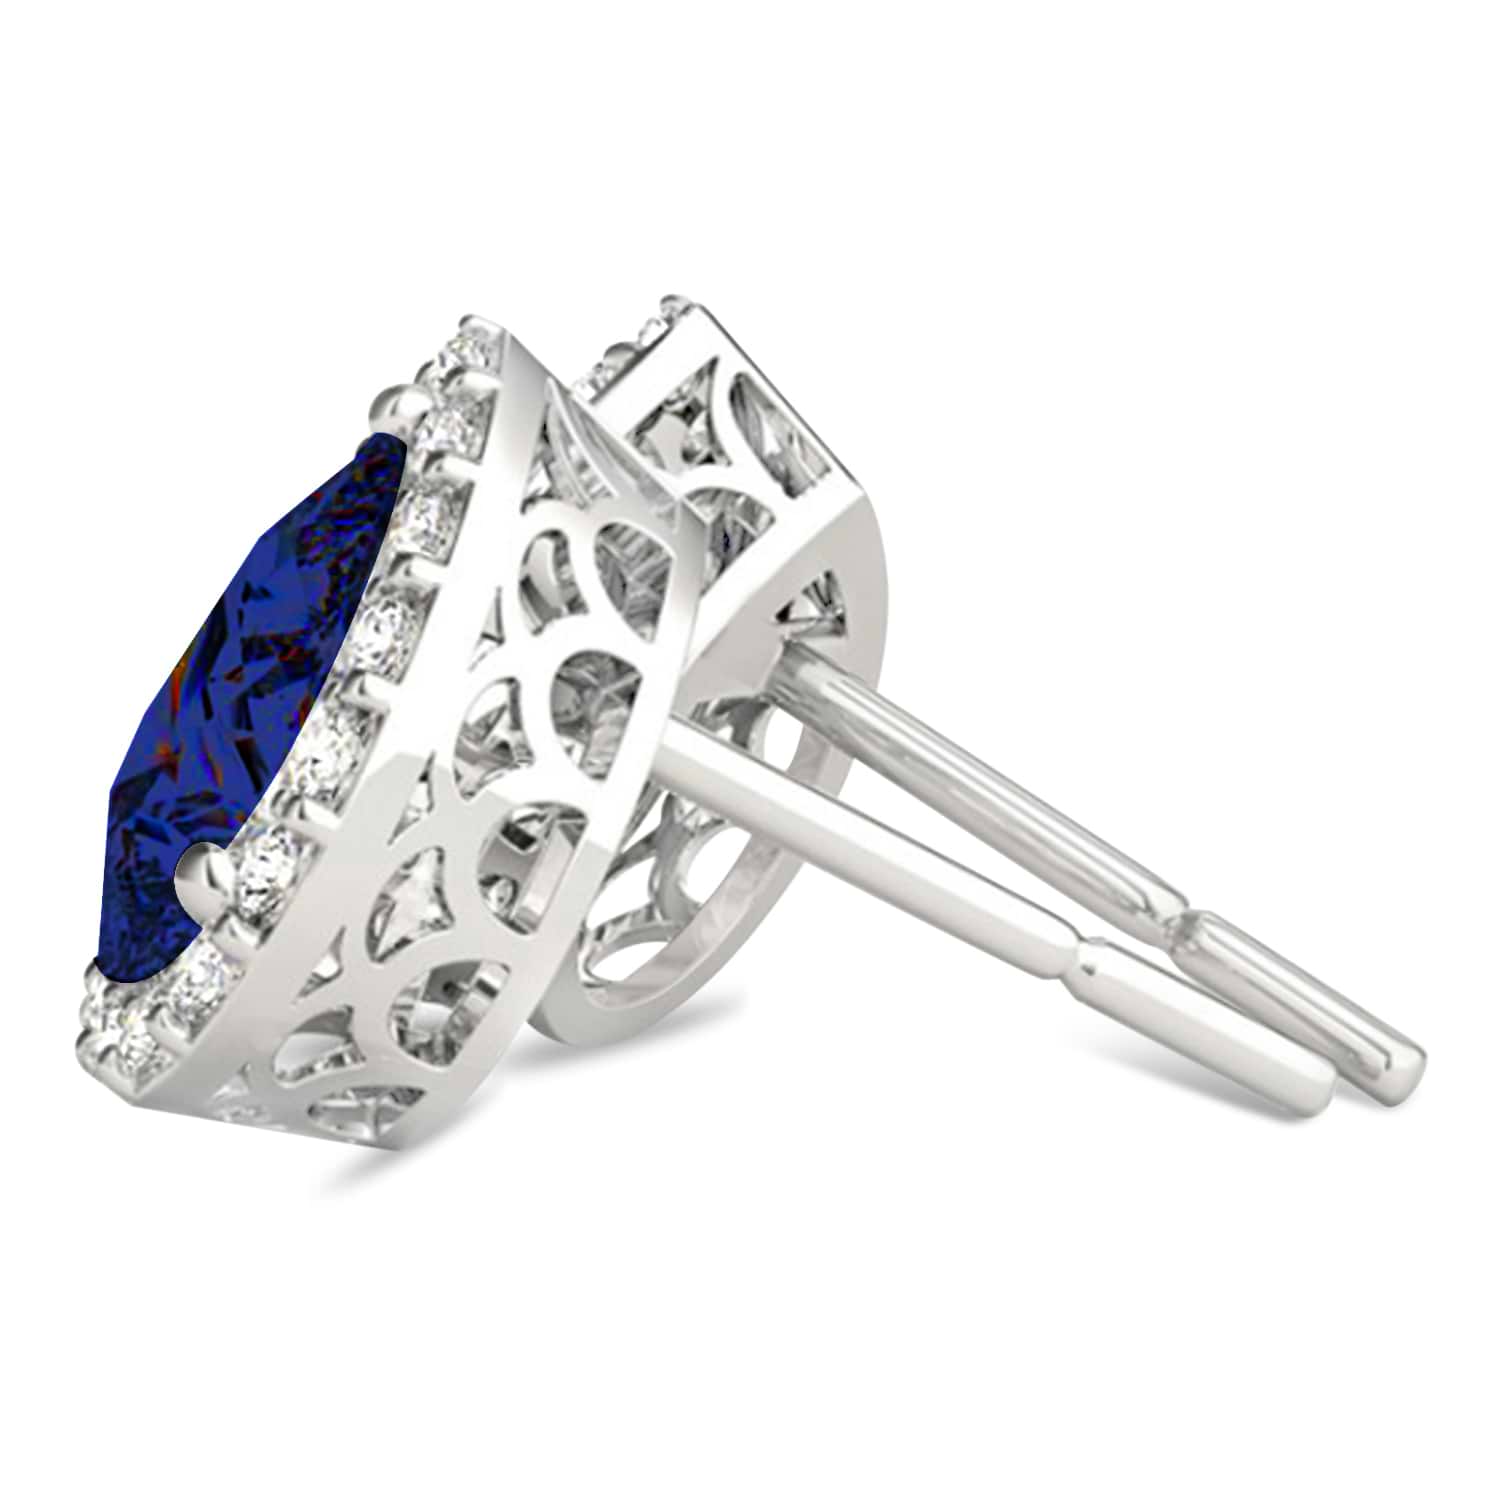 Teardrop Blue Sapphire & Diamond Halo Earrings 14k White Gold (1.74ct)